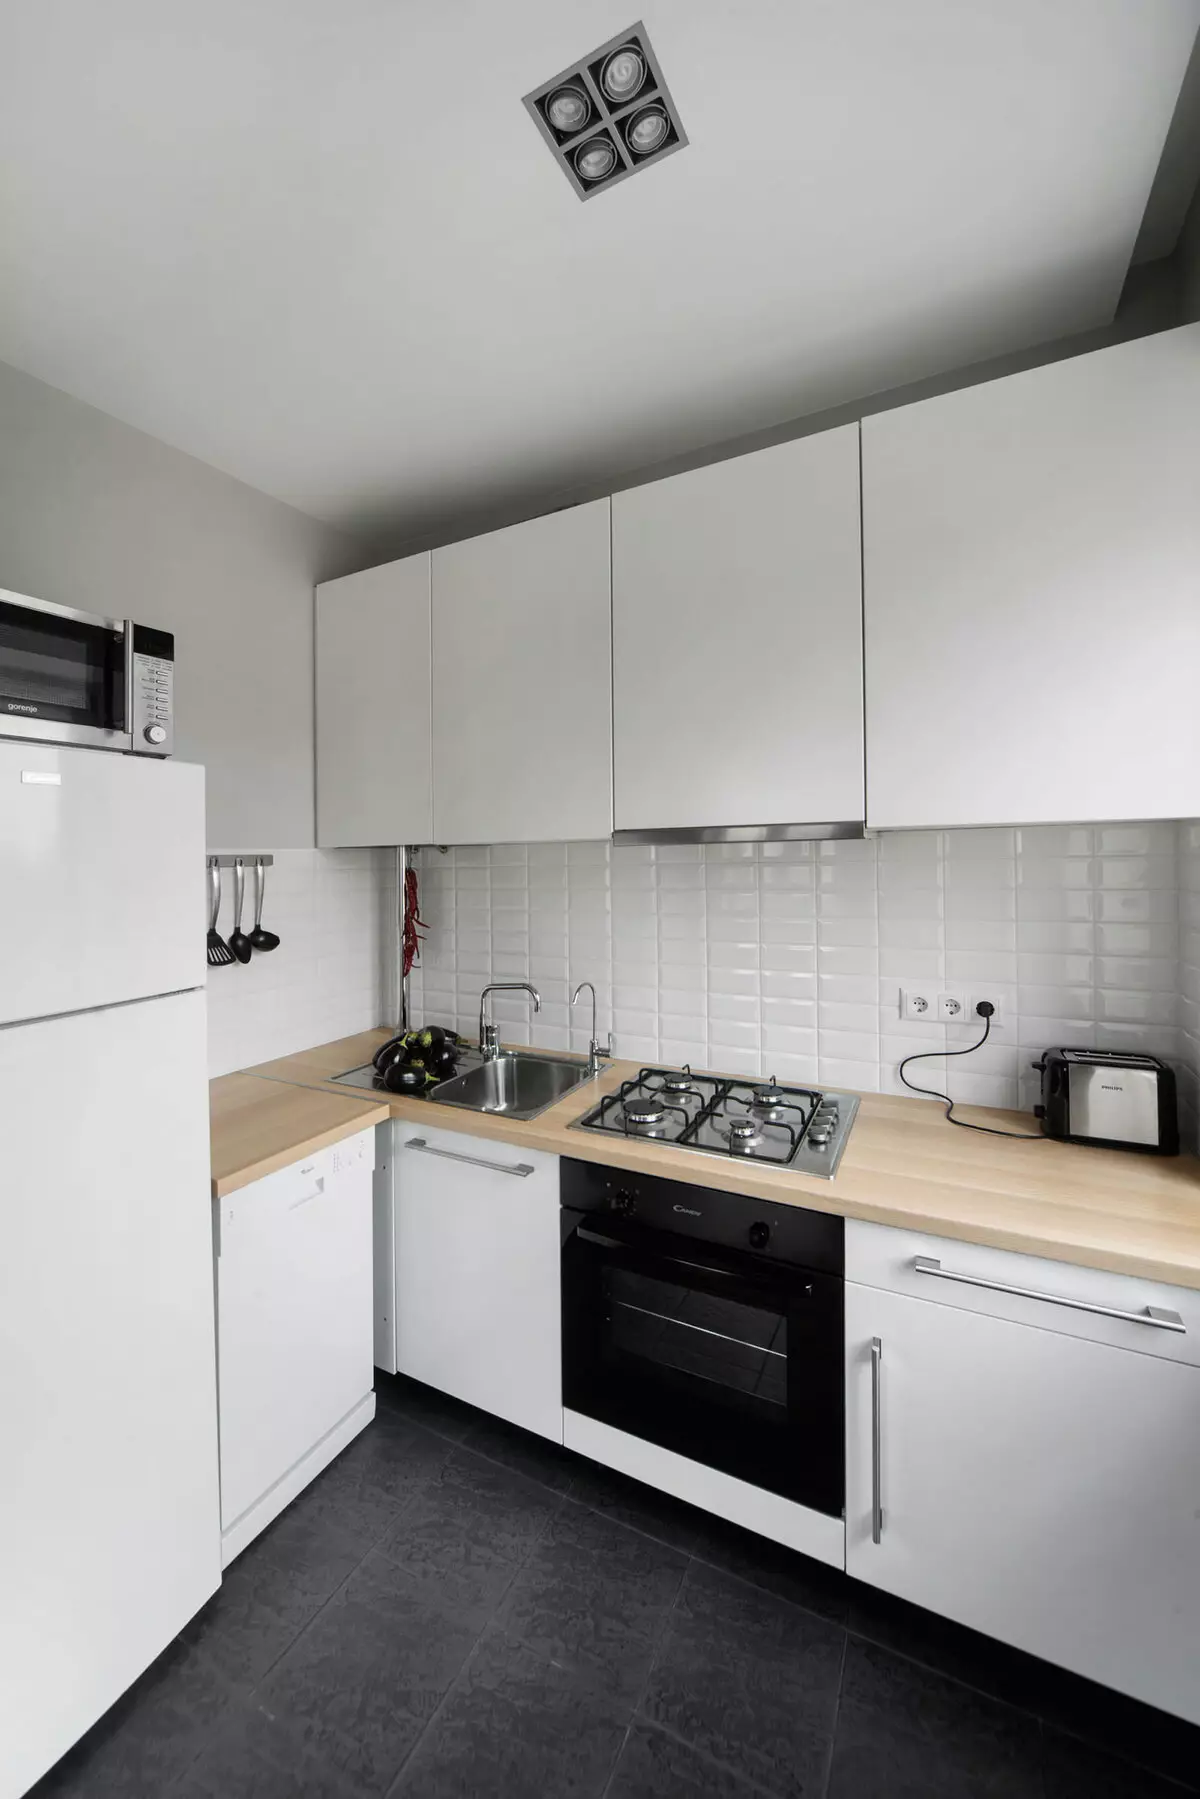 Խոհանոցի ձեւավորում 6 քմ: M սառնարանի հետ (75 լուսանկար). Խոհանոցի ինտերիեր 6 քմ սառնարանով, խոհանոցի պլանավորման նախագծեր 6 հրապարակ 9415_23